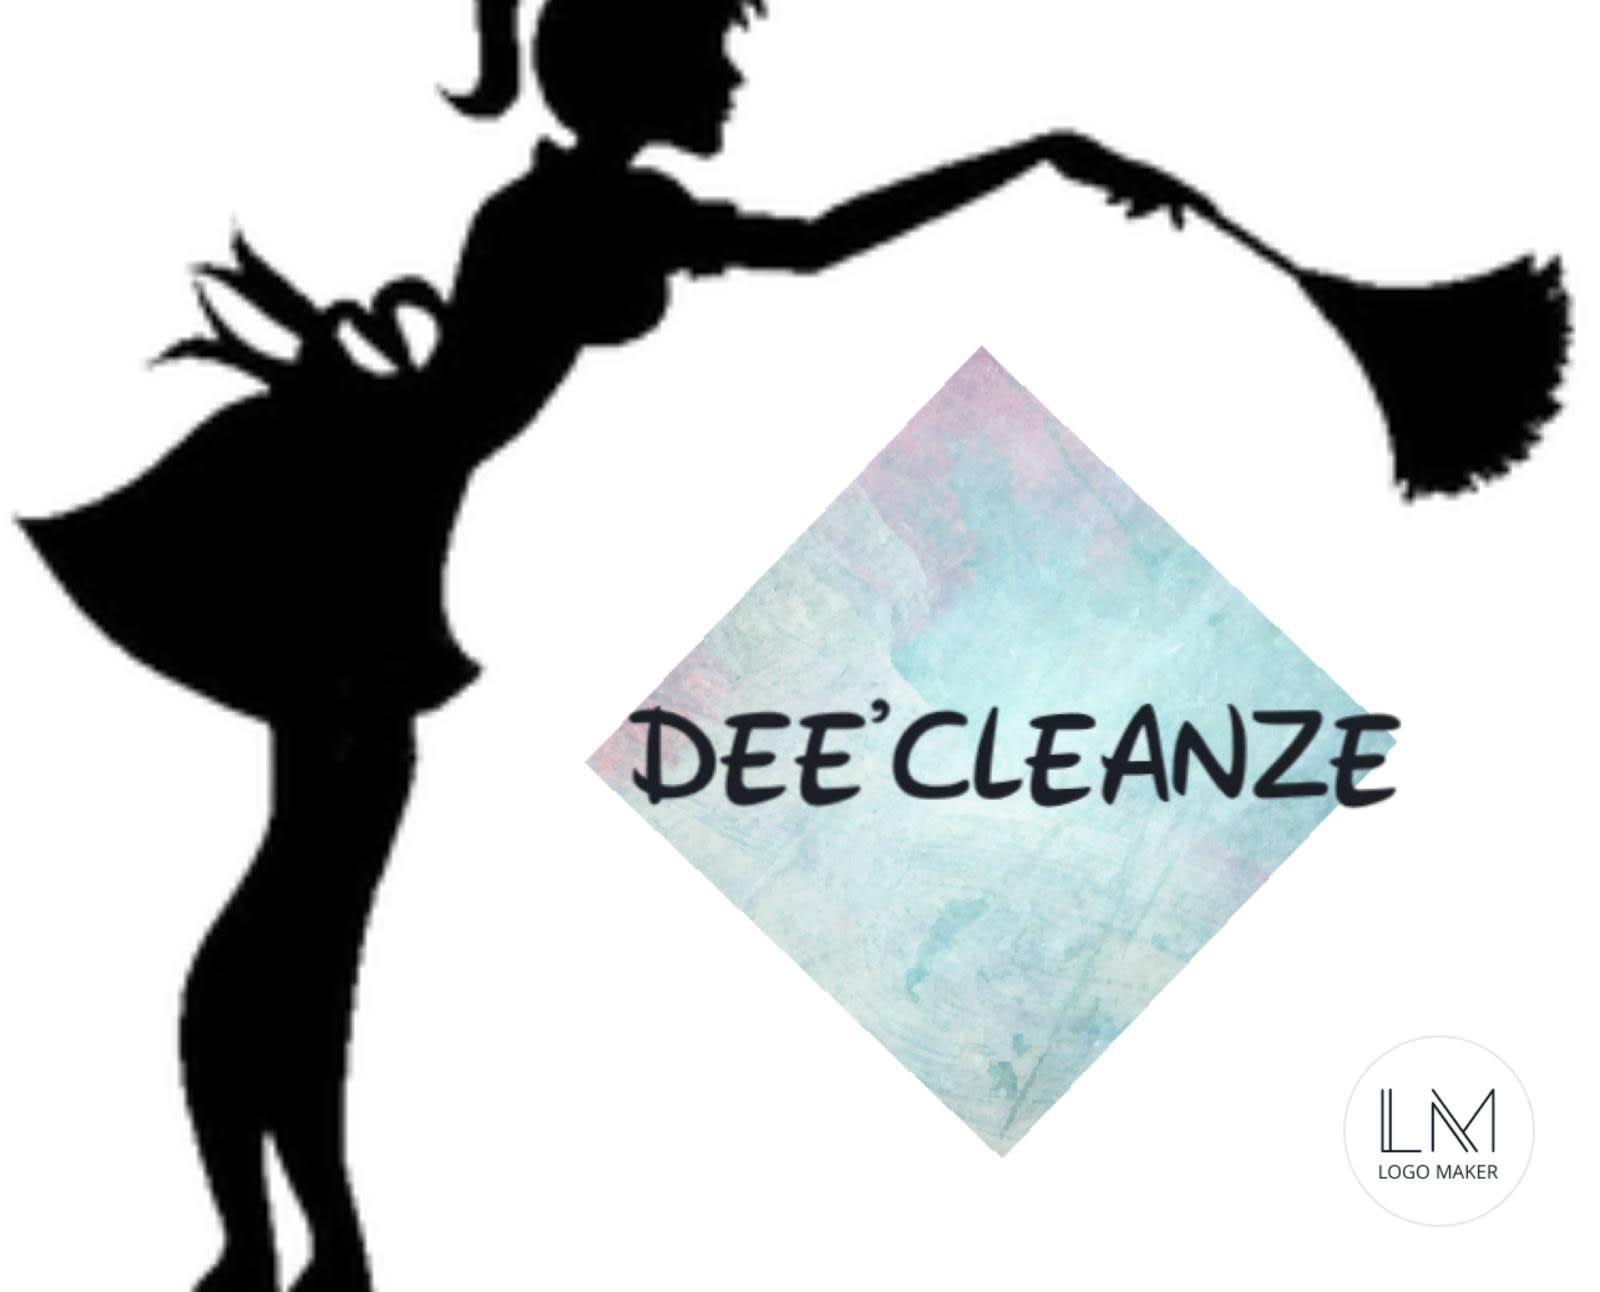 DeeCleanze